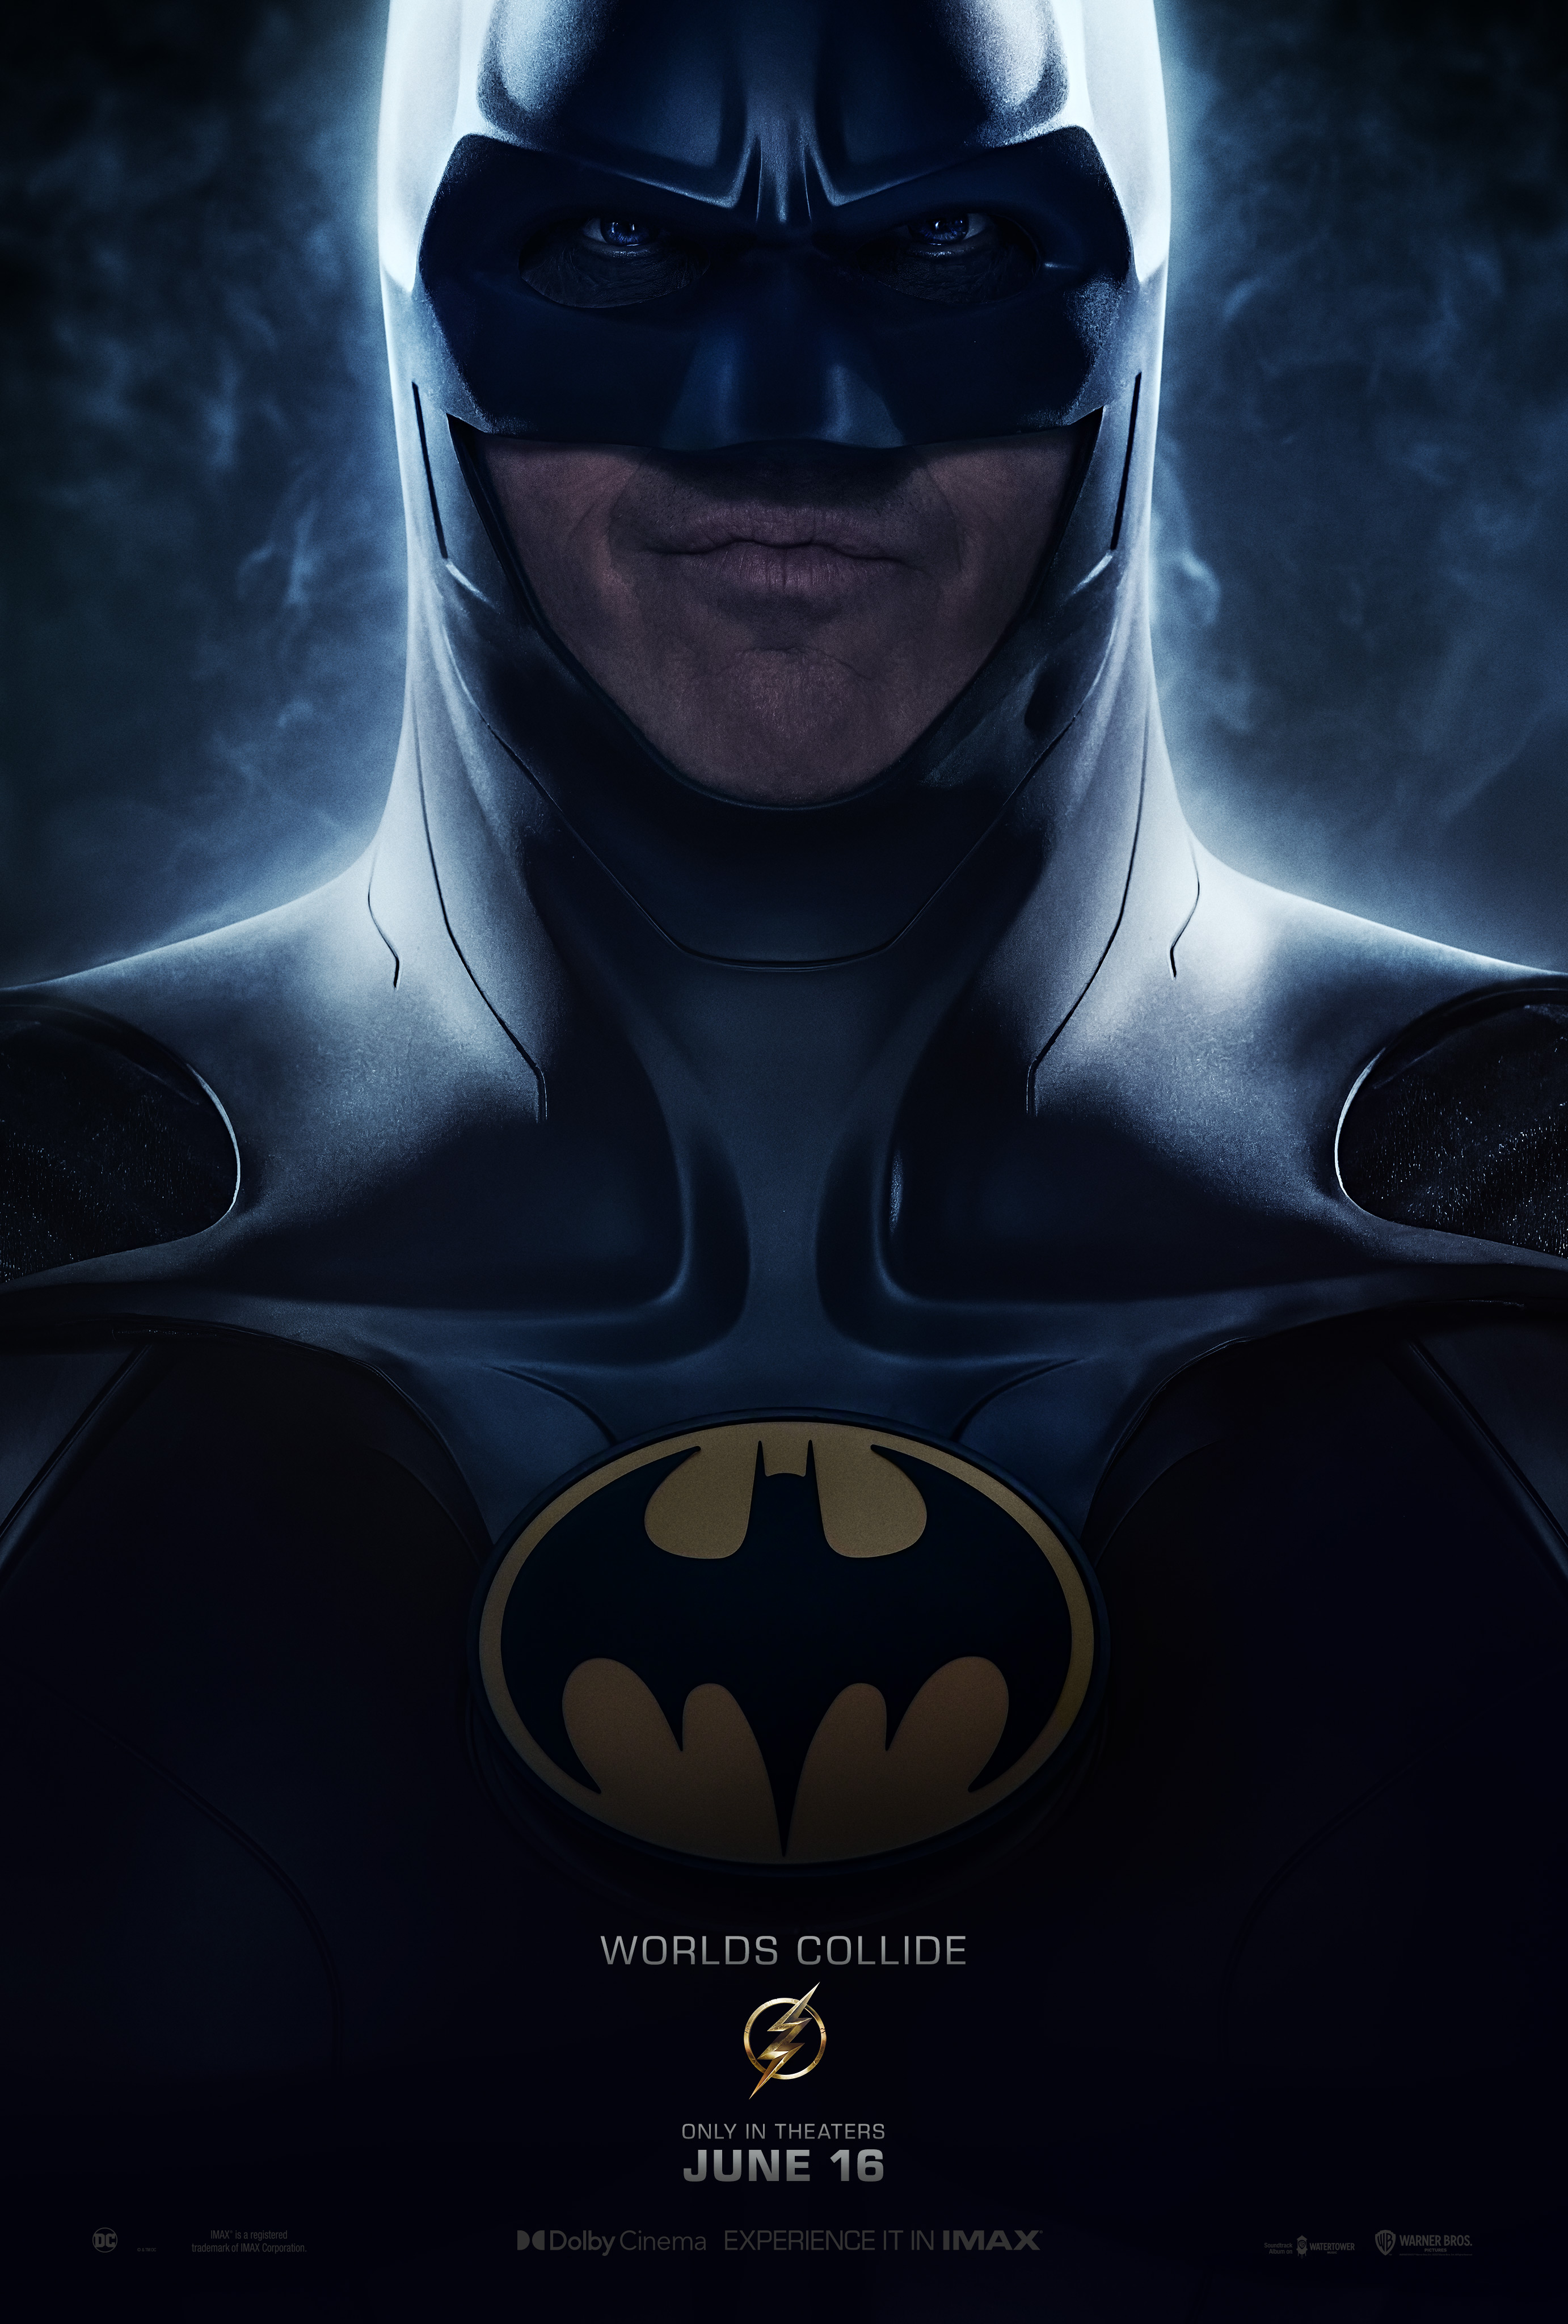 Michael Keaton as Bruce Wayne aka Batman | The Flash | Character poster